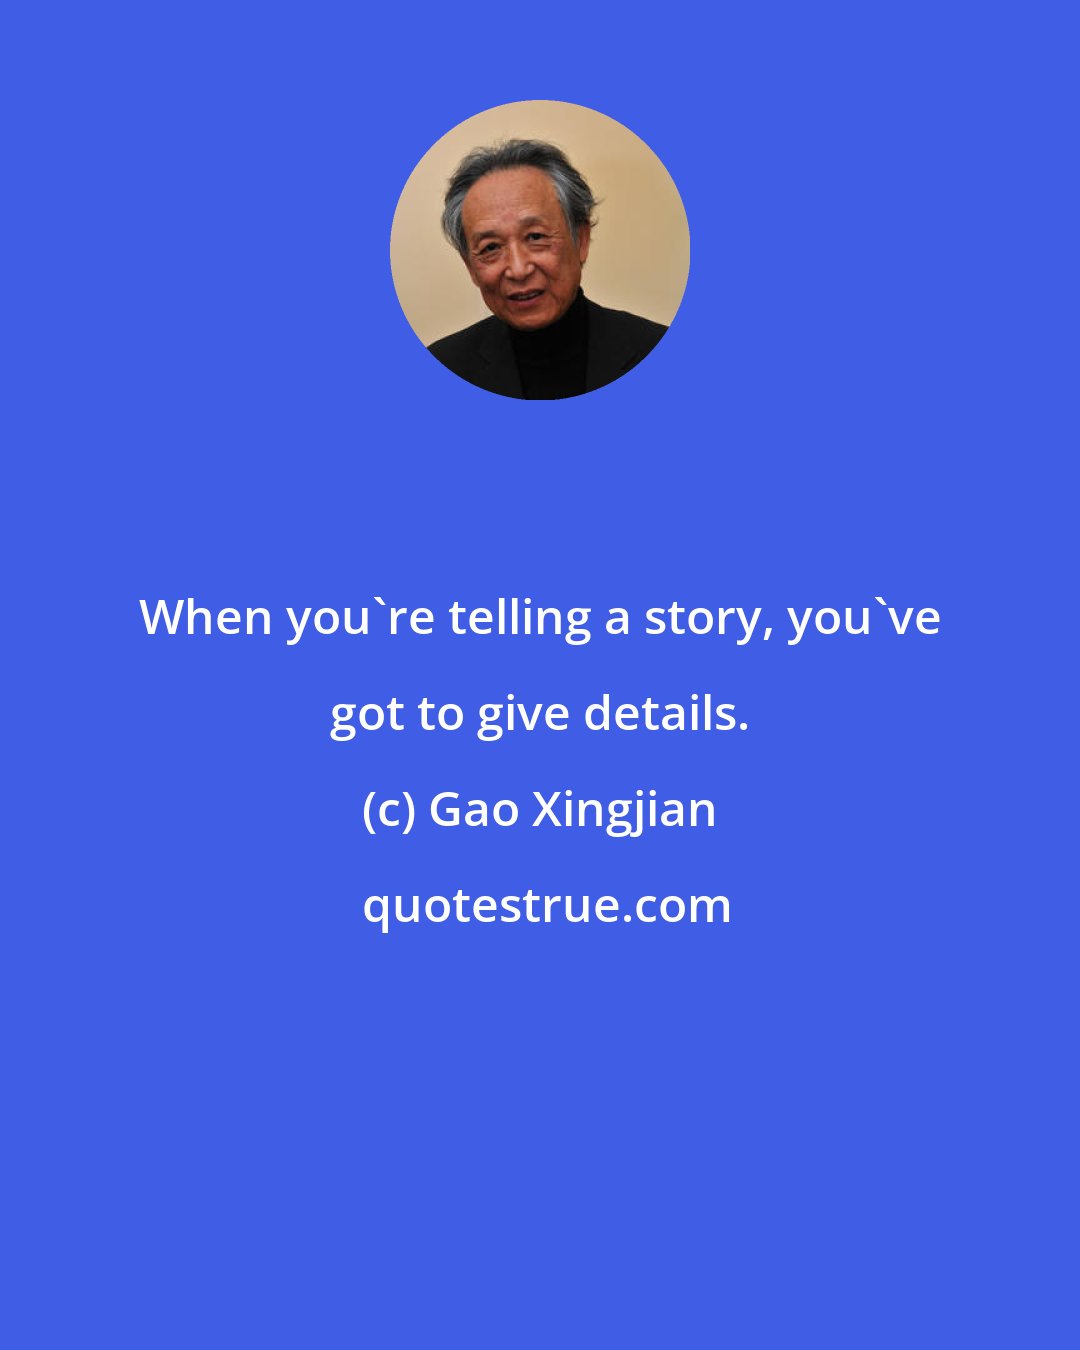 Gao Xingjian: When you're telling a story, you've got to give details.